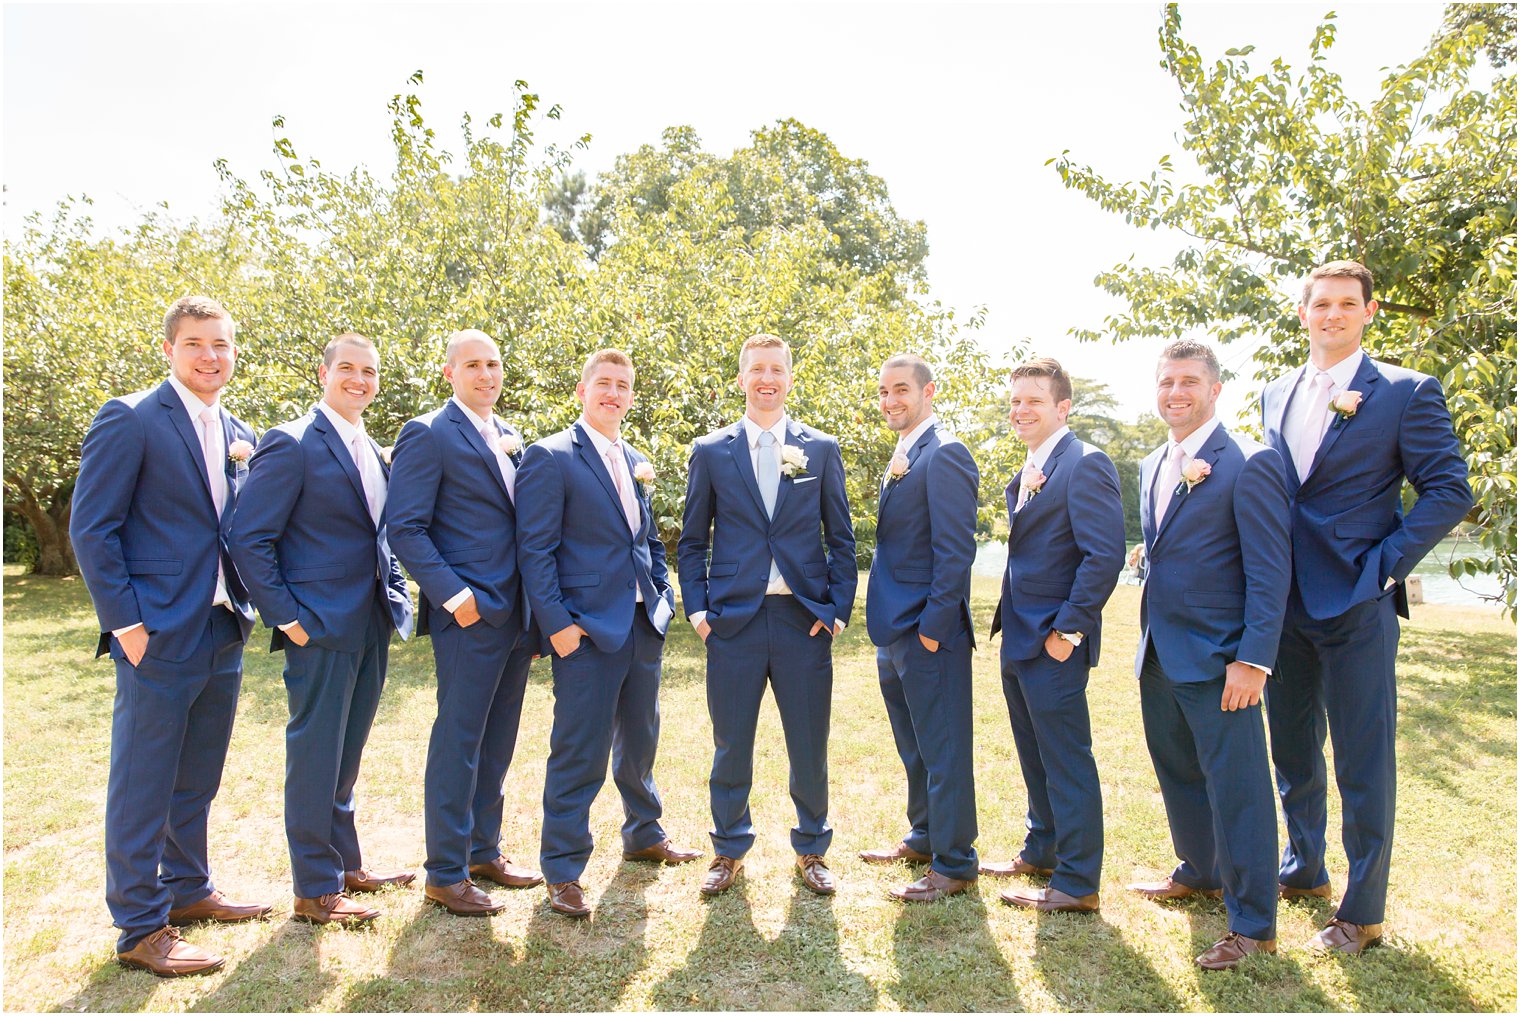 groomsmen wearing blue suits and pink ties